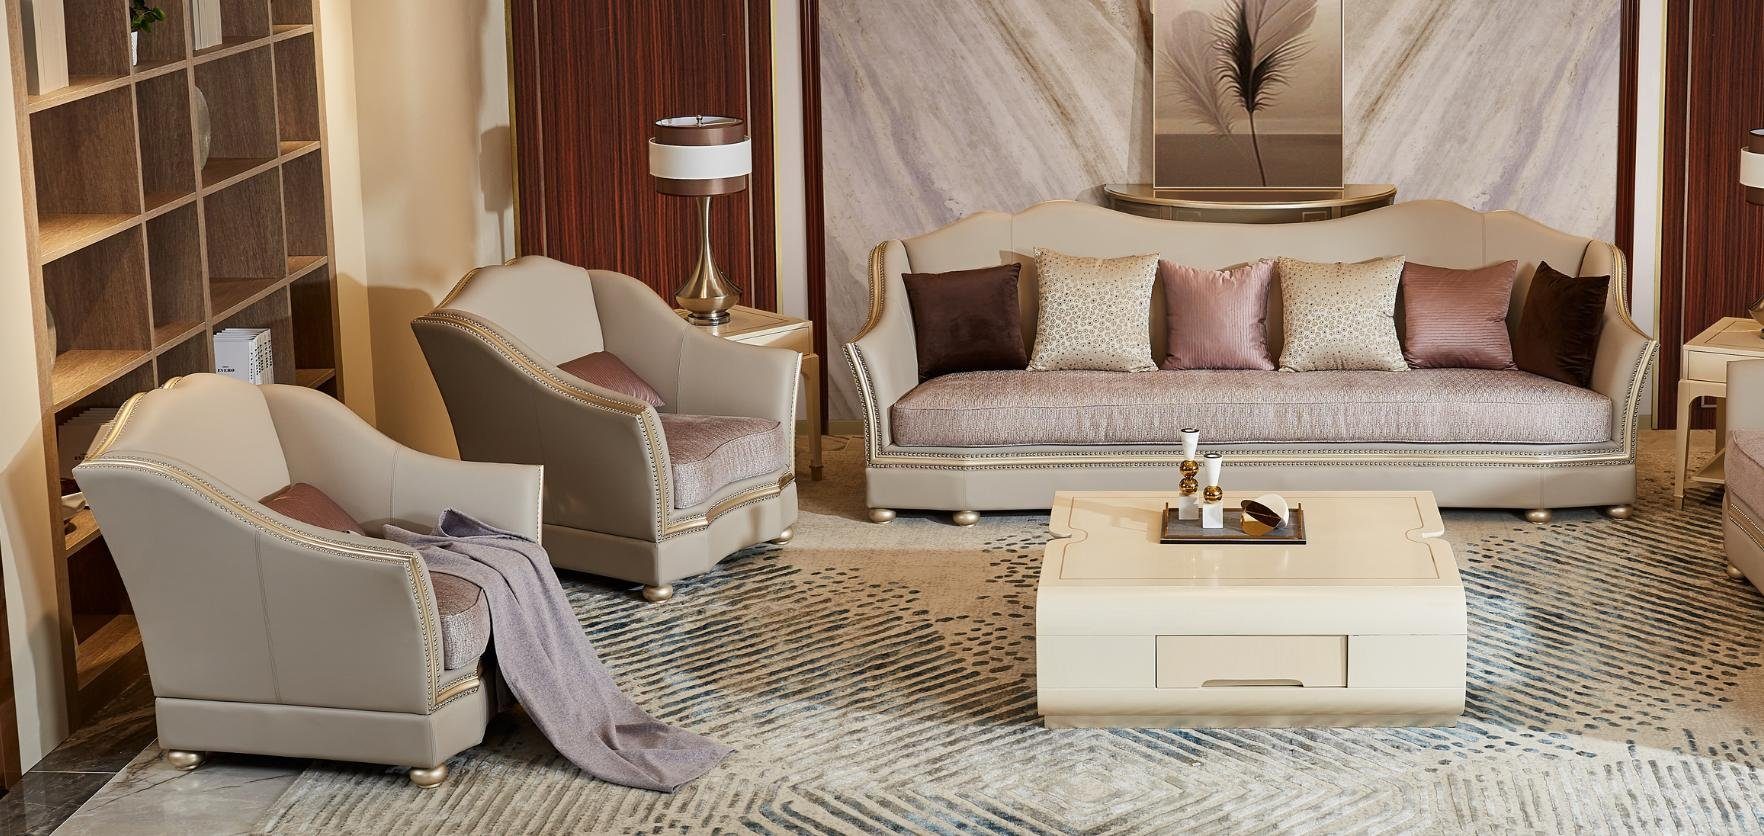 JVmoebel in Luxus Design Europe Made Sofa Sofagarnitur, Sitzpolster Möbel Wohnzimmer